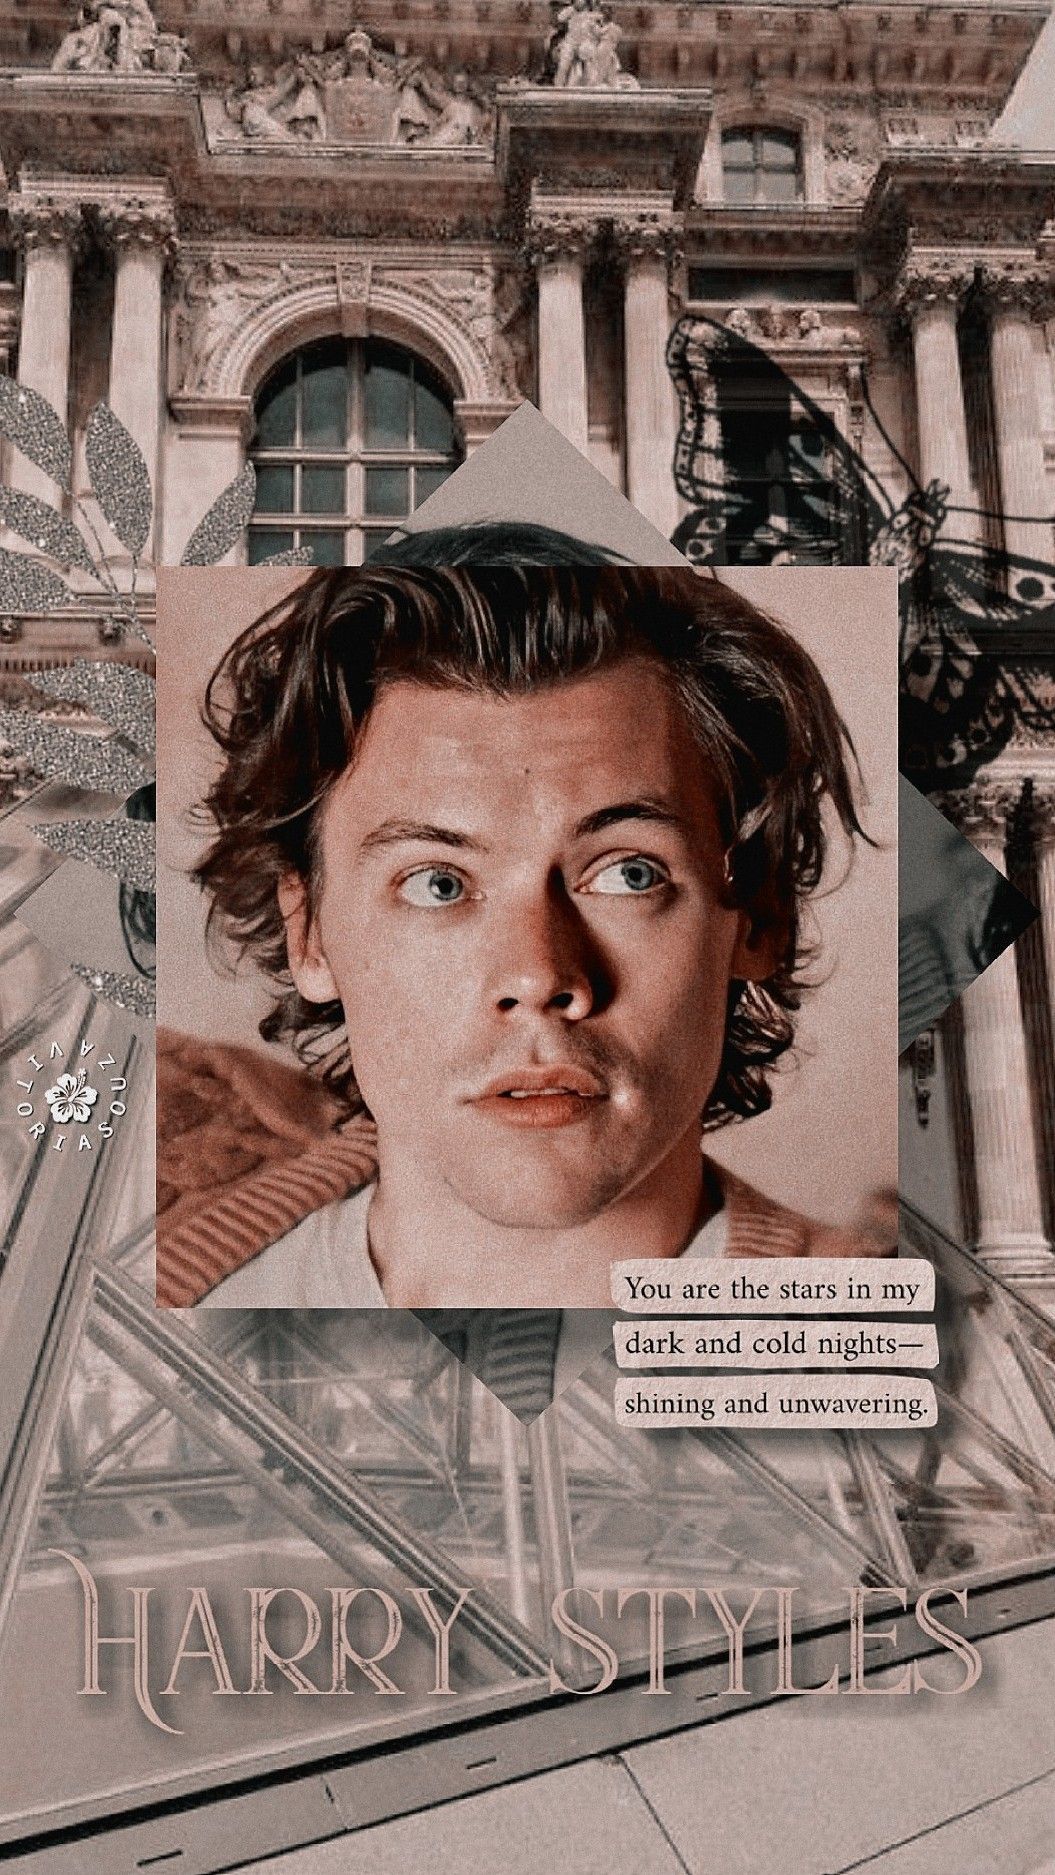 Harry Styles Wallpaper. Harry styles wallpaper, Harry styles photo, Harry styles lockscreen